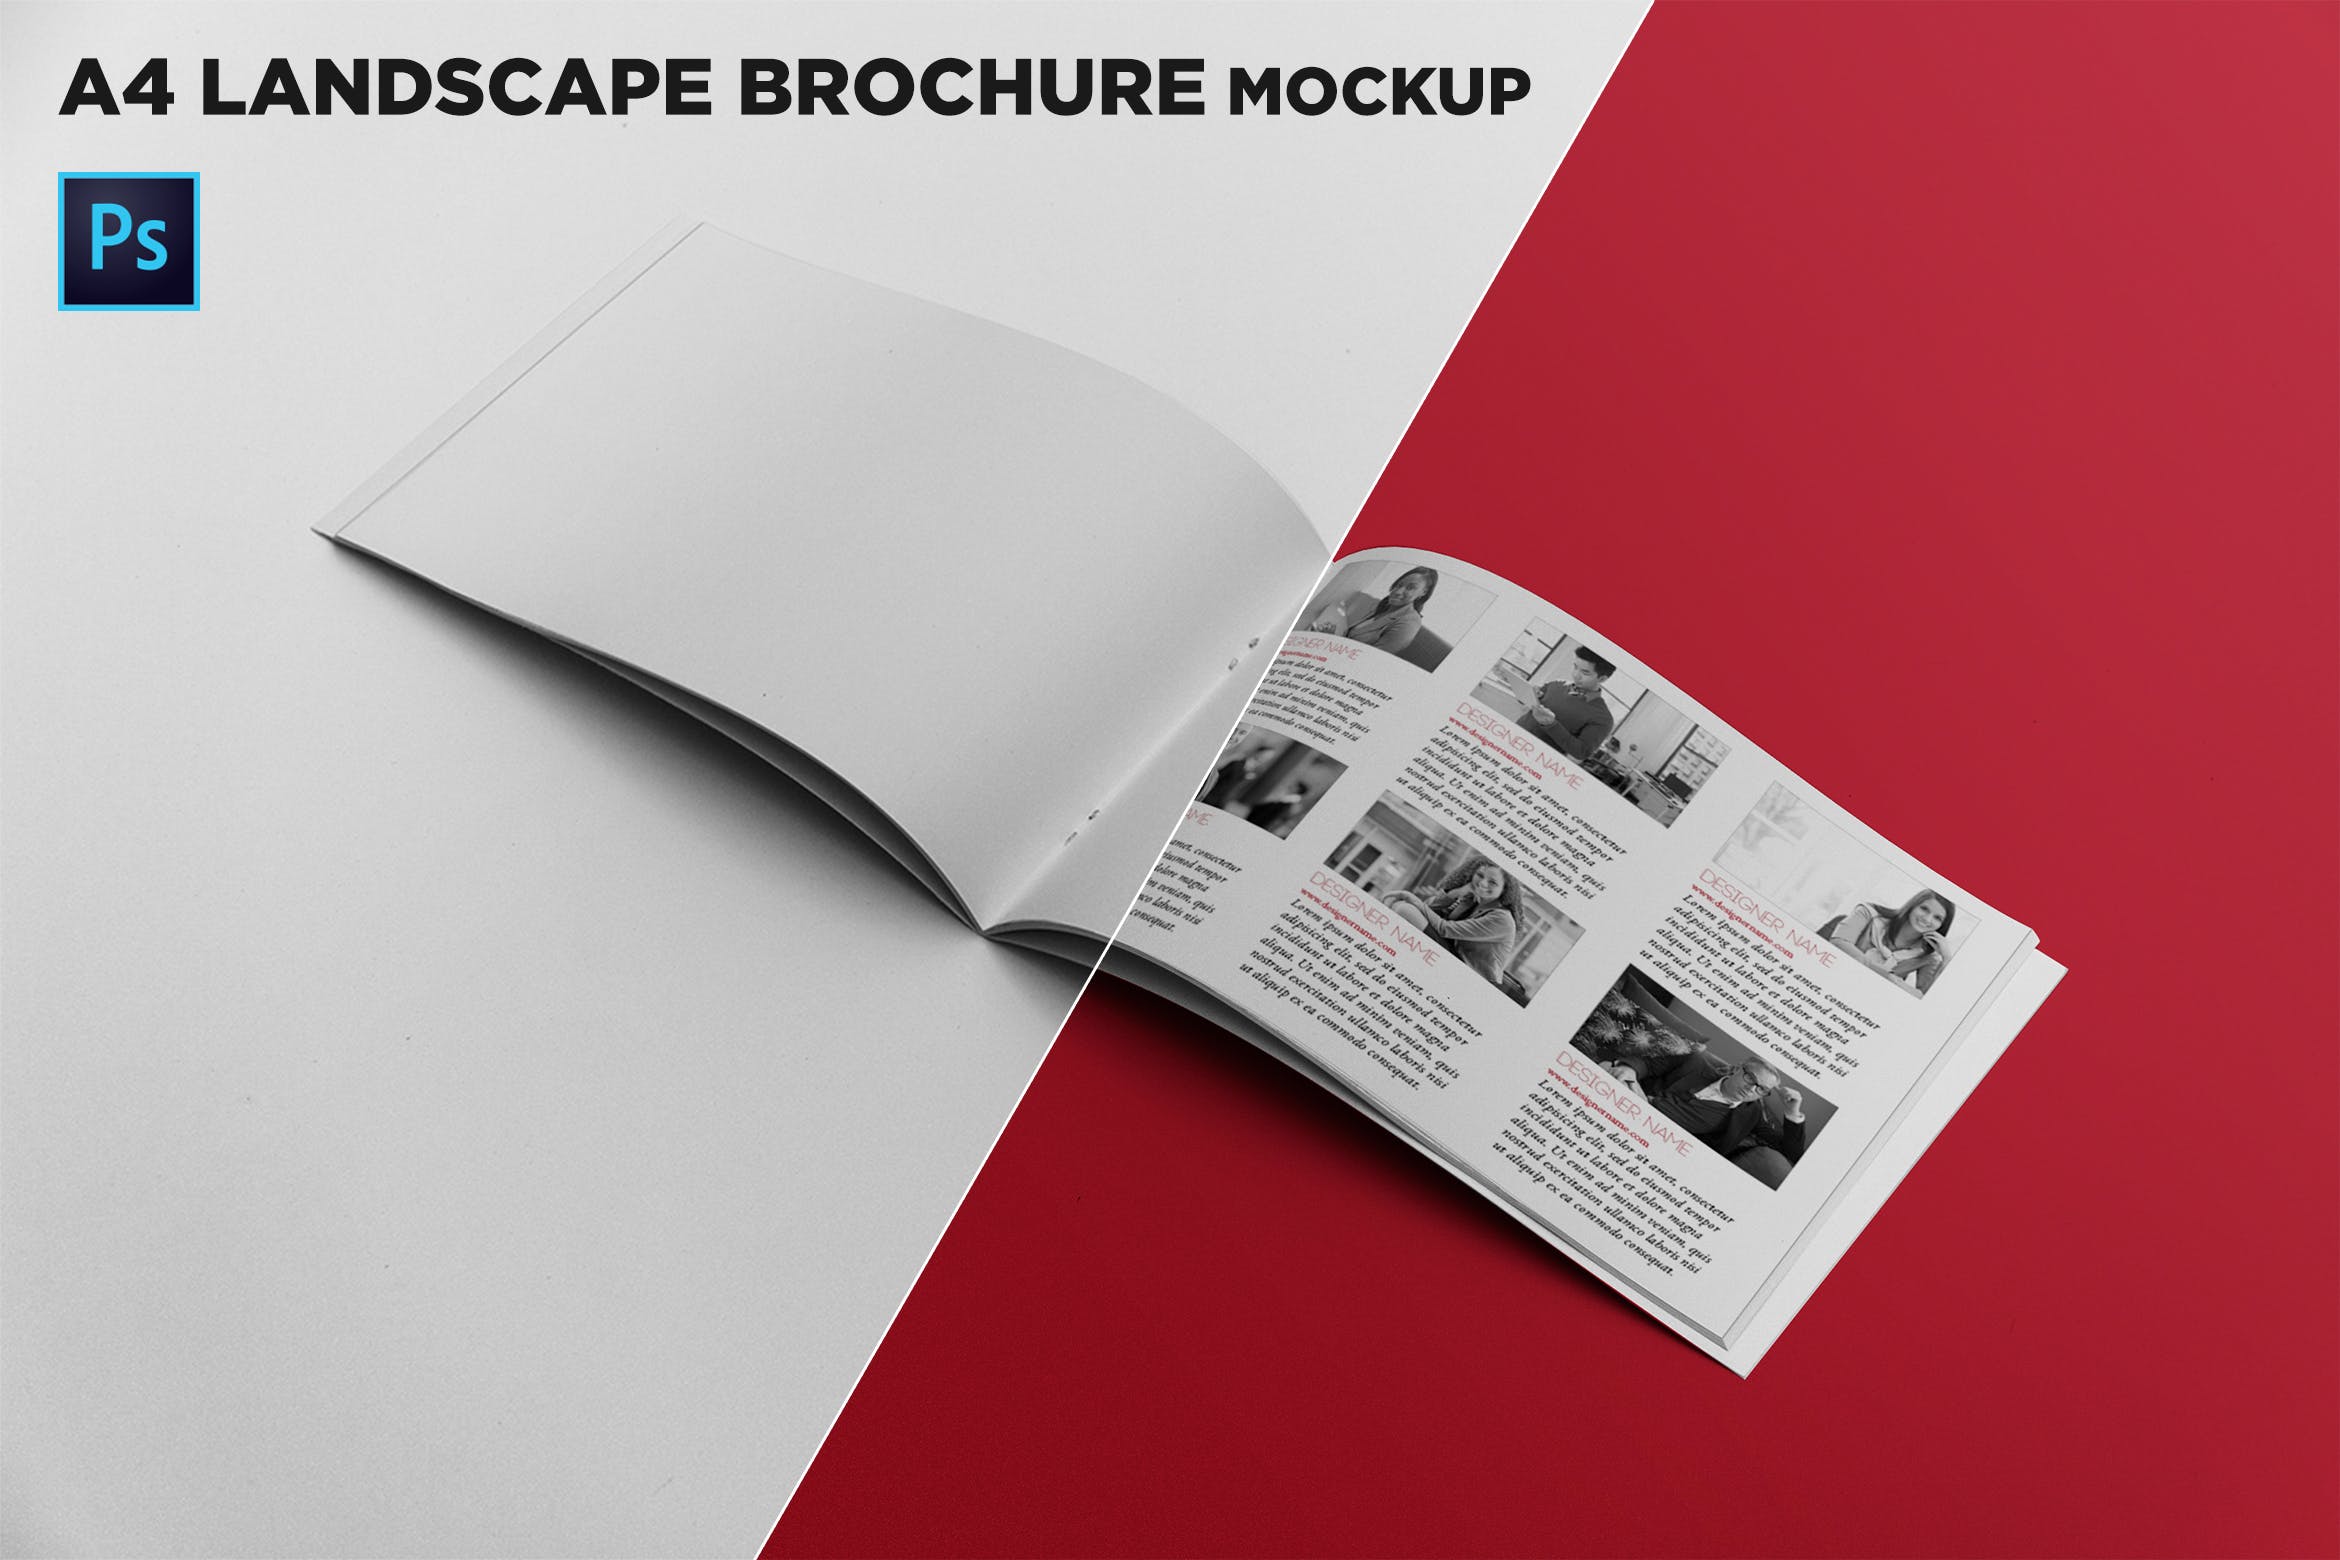 宣传画册/企业画册内页版式设计图样机素材库精选 Open Landscape Brochure Mockup插图